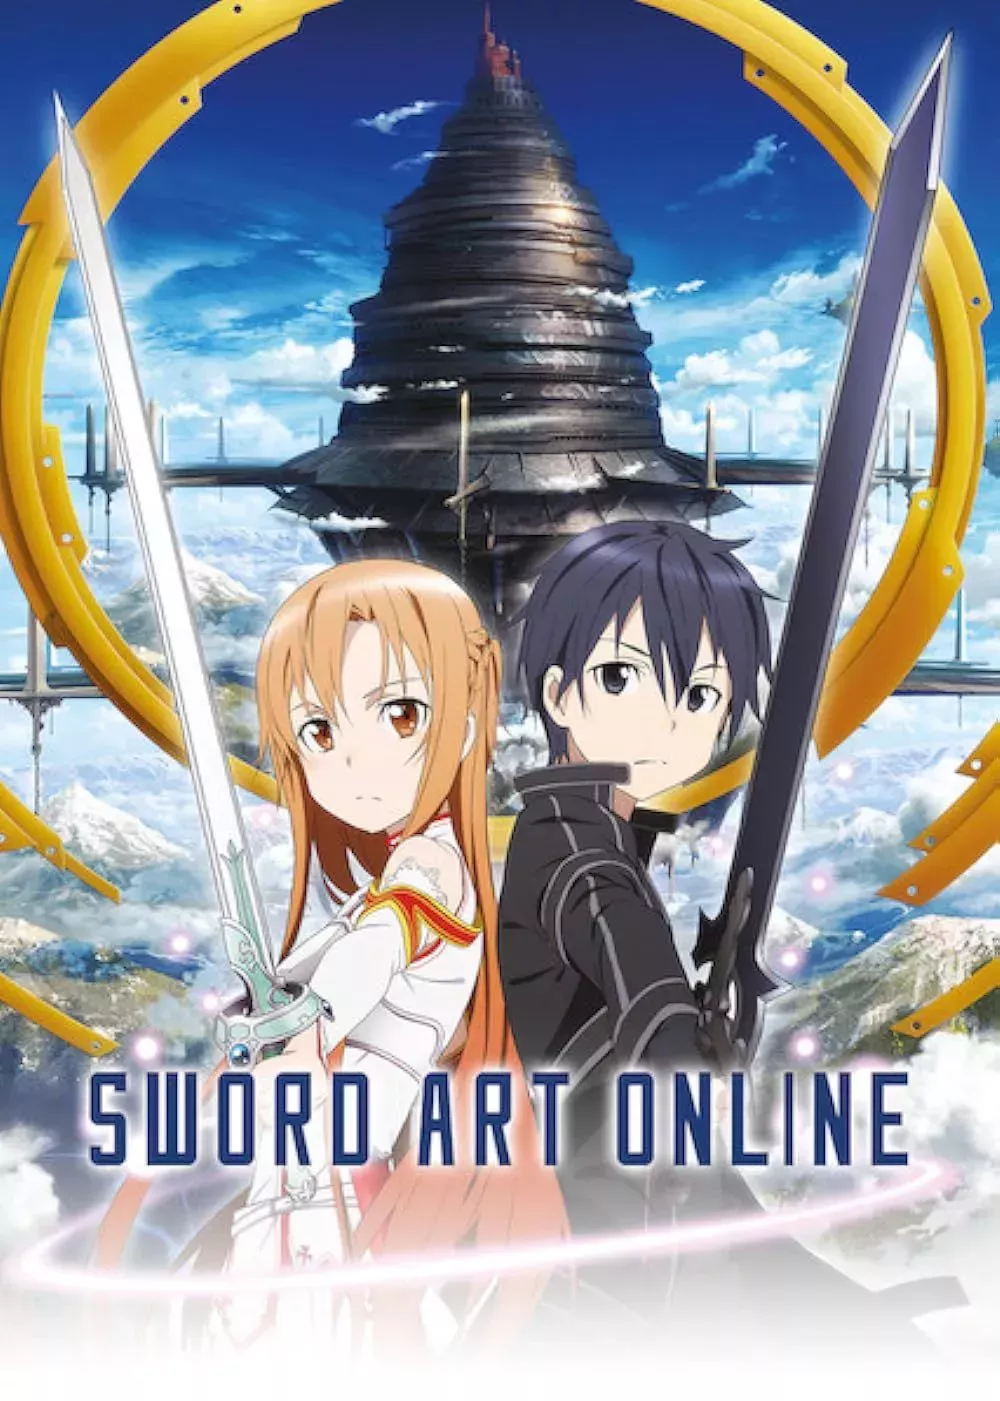 Kiriko and Asuna in Sword Art Online (2012) official poster